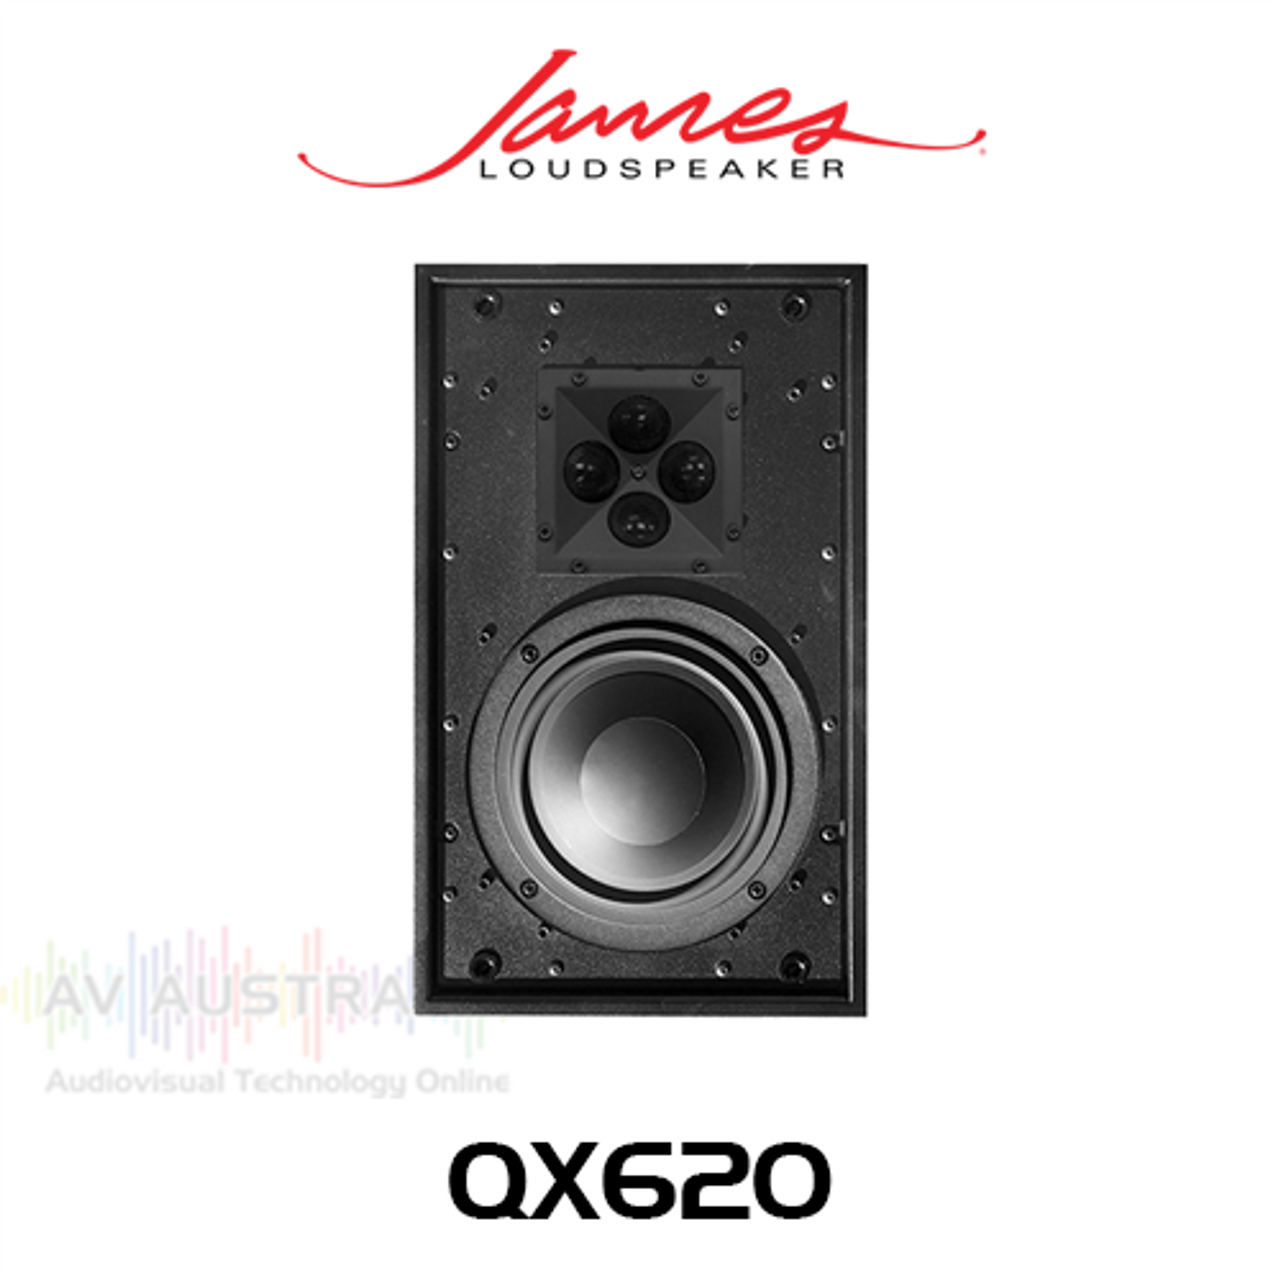 James Loudspeaker QX620 6.5" Full-Range In-Wall Loudspeaker (Each)